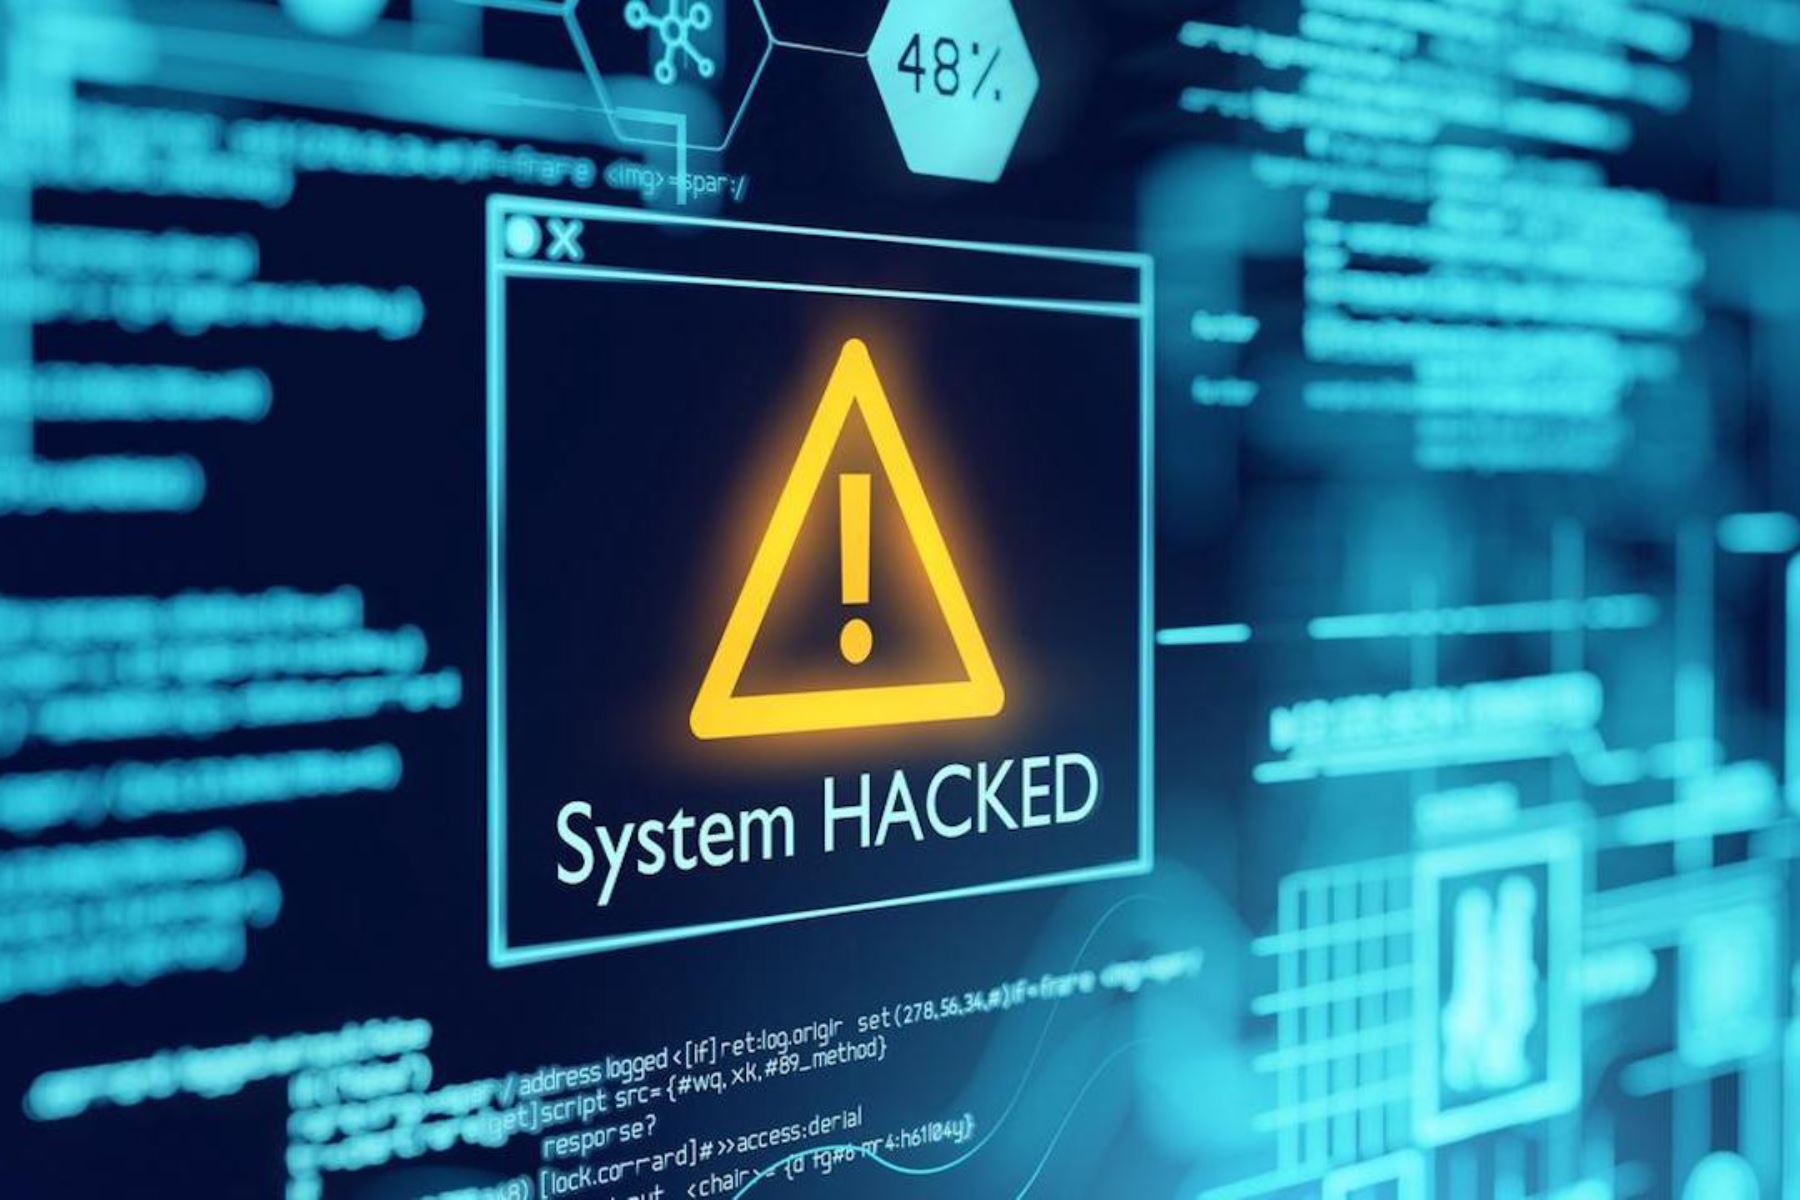 Perú ocupa la tercera ubicación del ranking de países latinoamericanos con mayores índices de intentos de ciberataques por malware y ransomware, según reportó Fortinet.